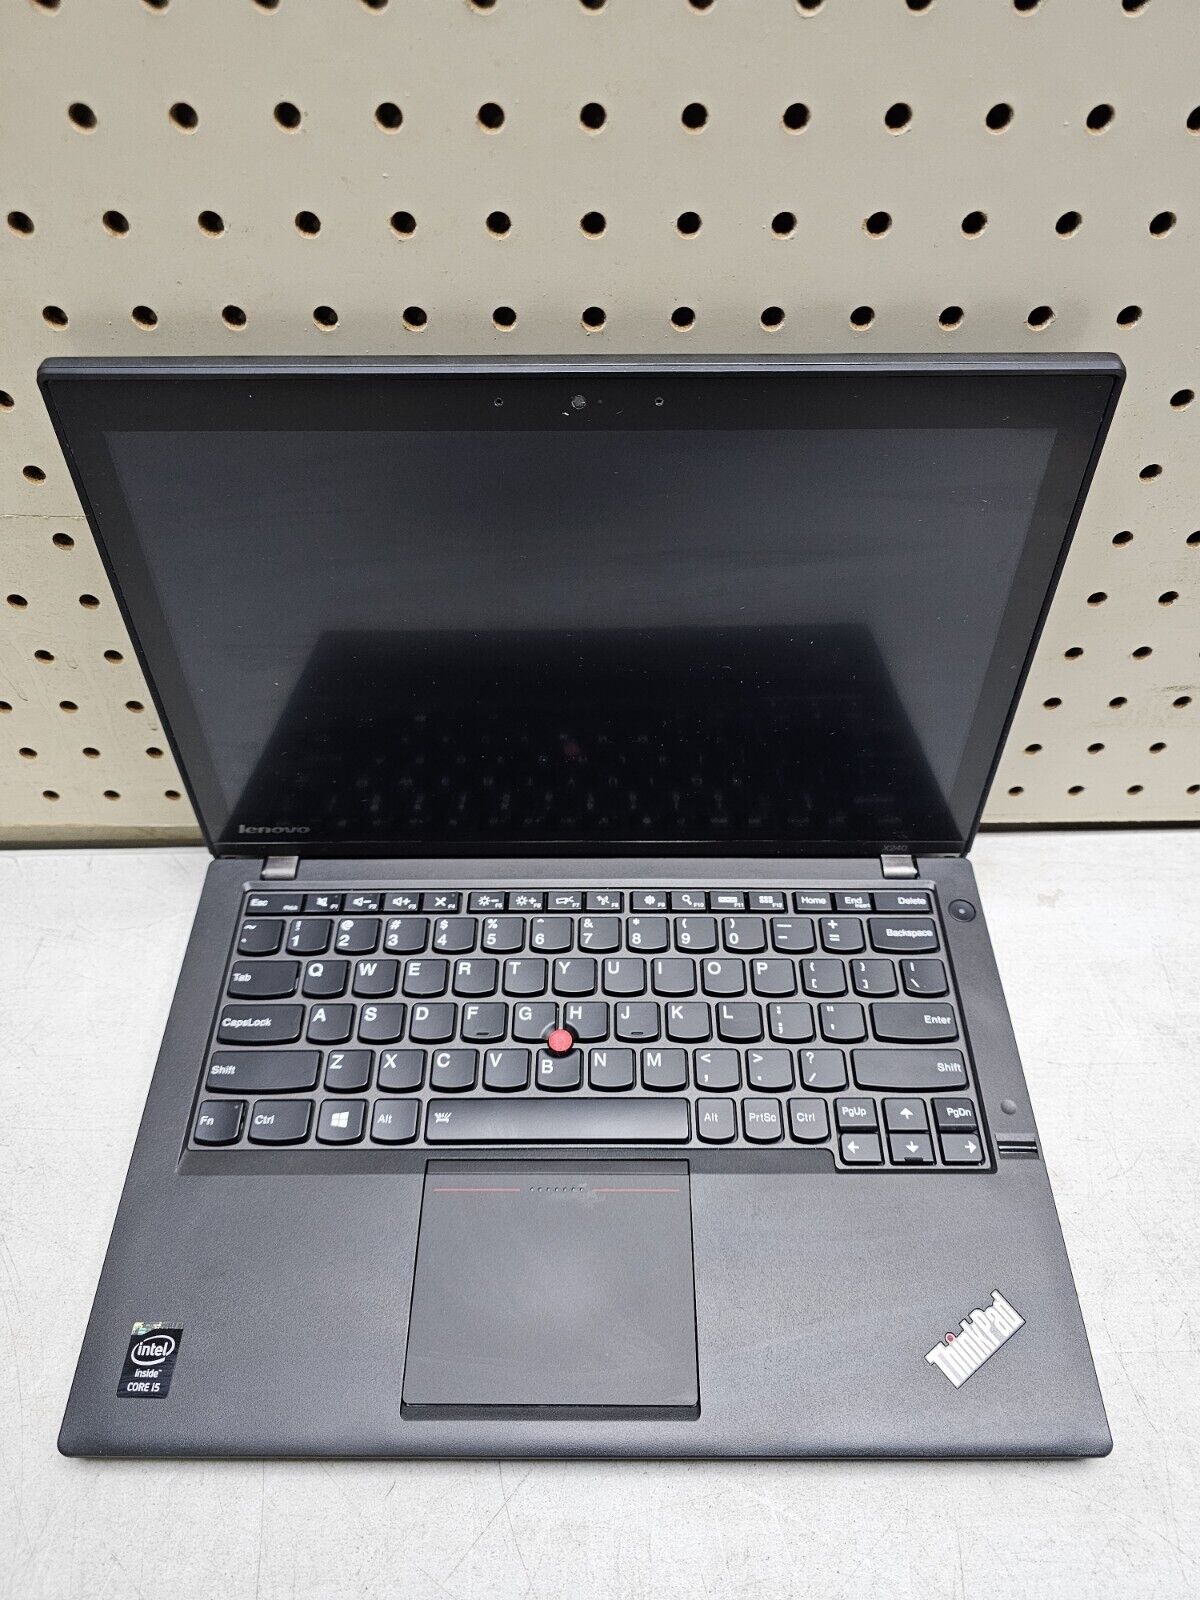 Lenovo X240 Laptop - i5-4300U - 8GB RAM - 500GB HDD - Windows 10 OS Tested Works